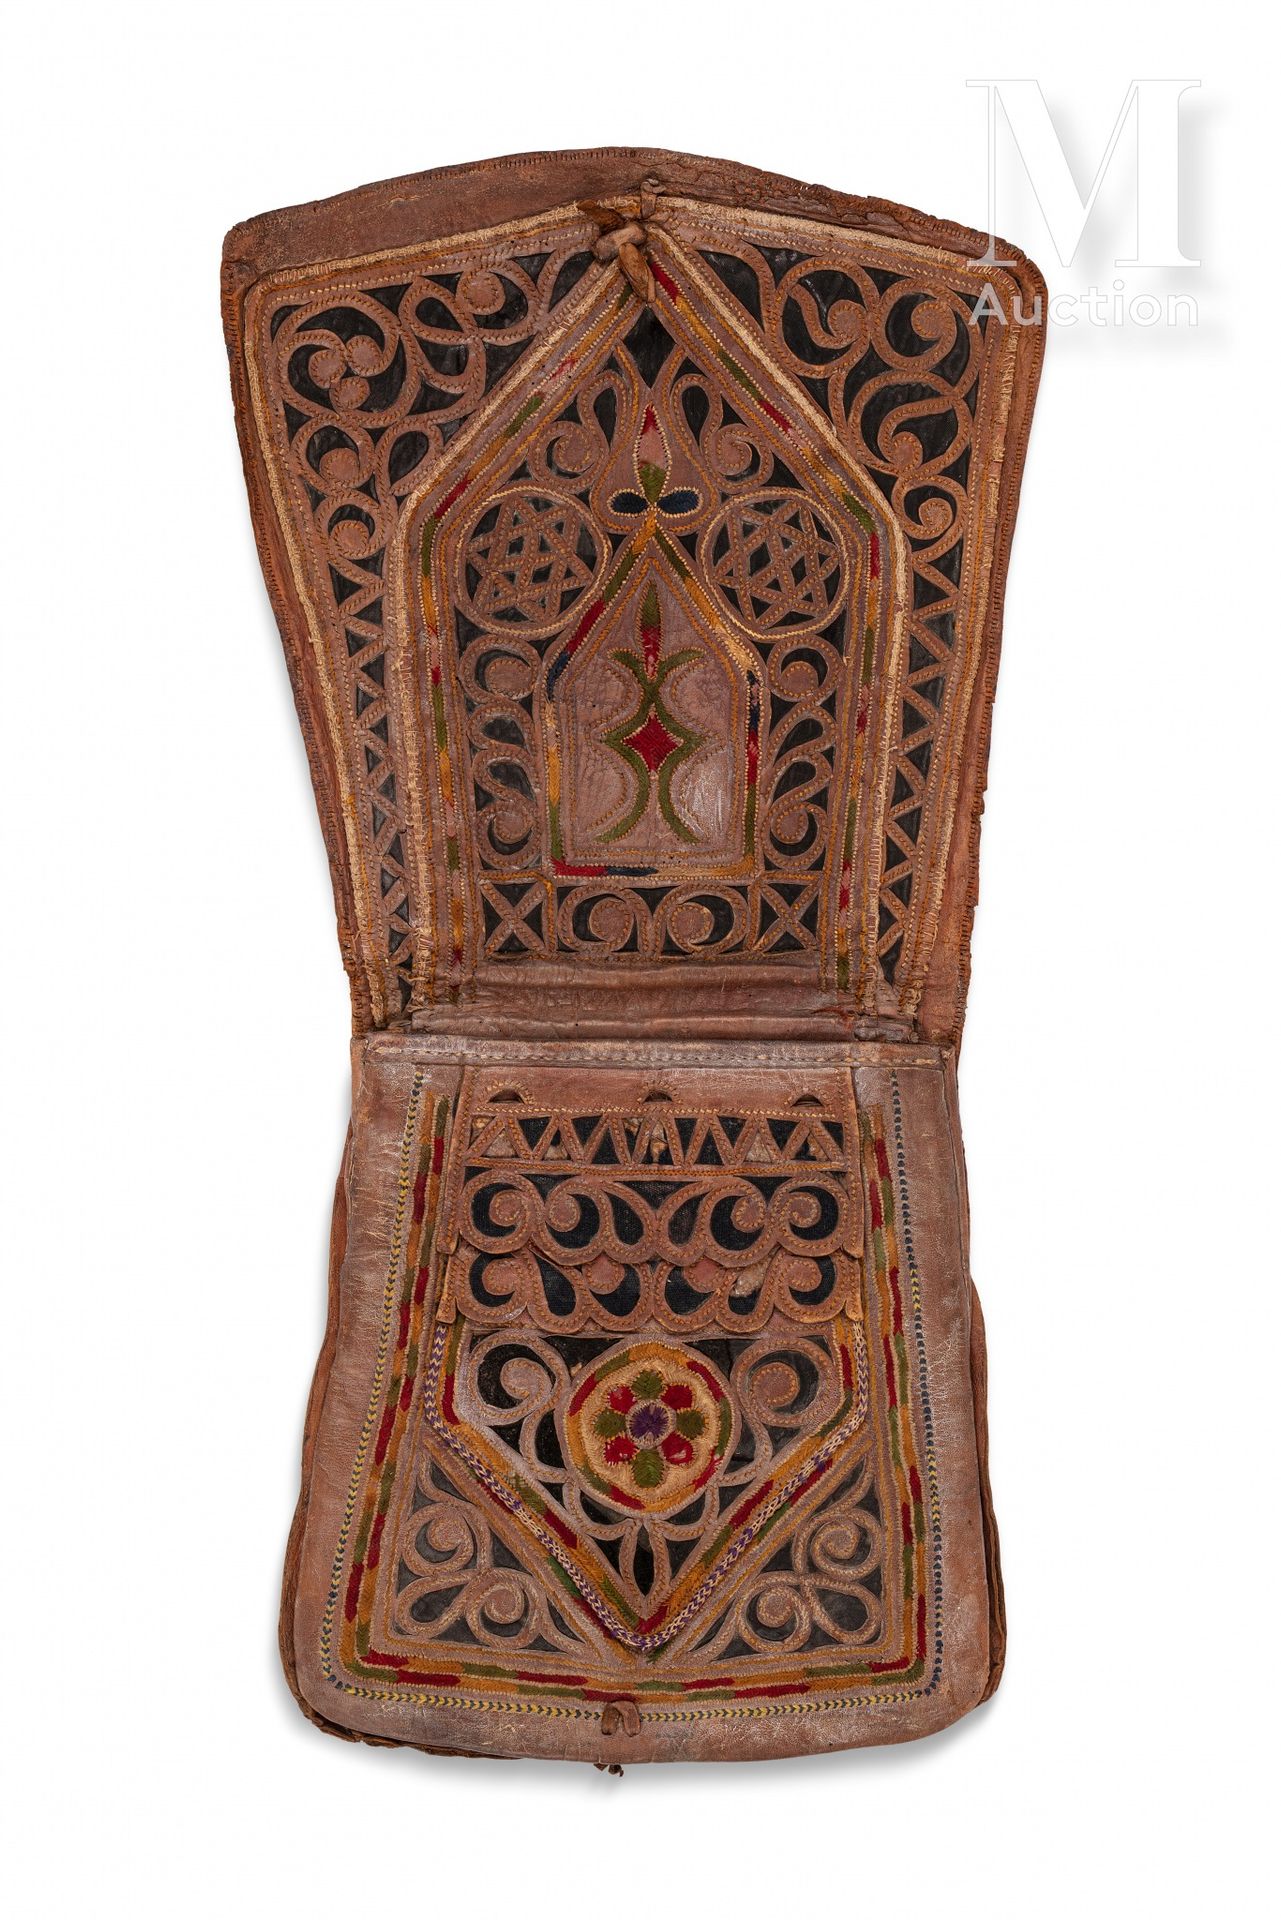 Choukara - Sac d'homme Marruecos, siglo XIX

Cartera de cuero bordada con hilos &hellip;